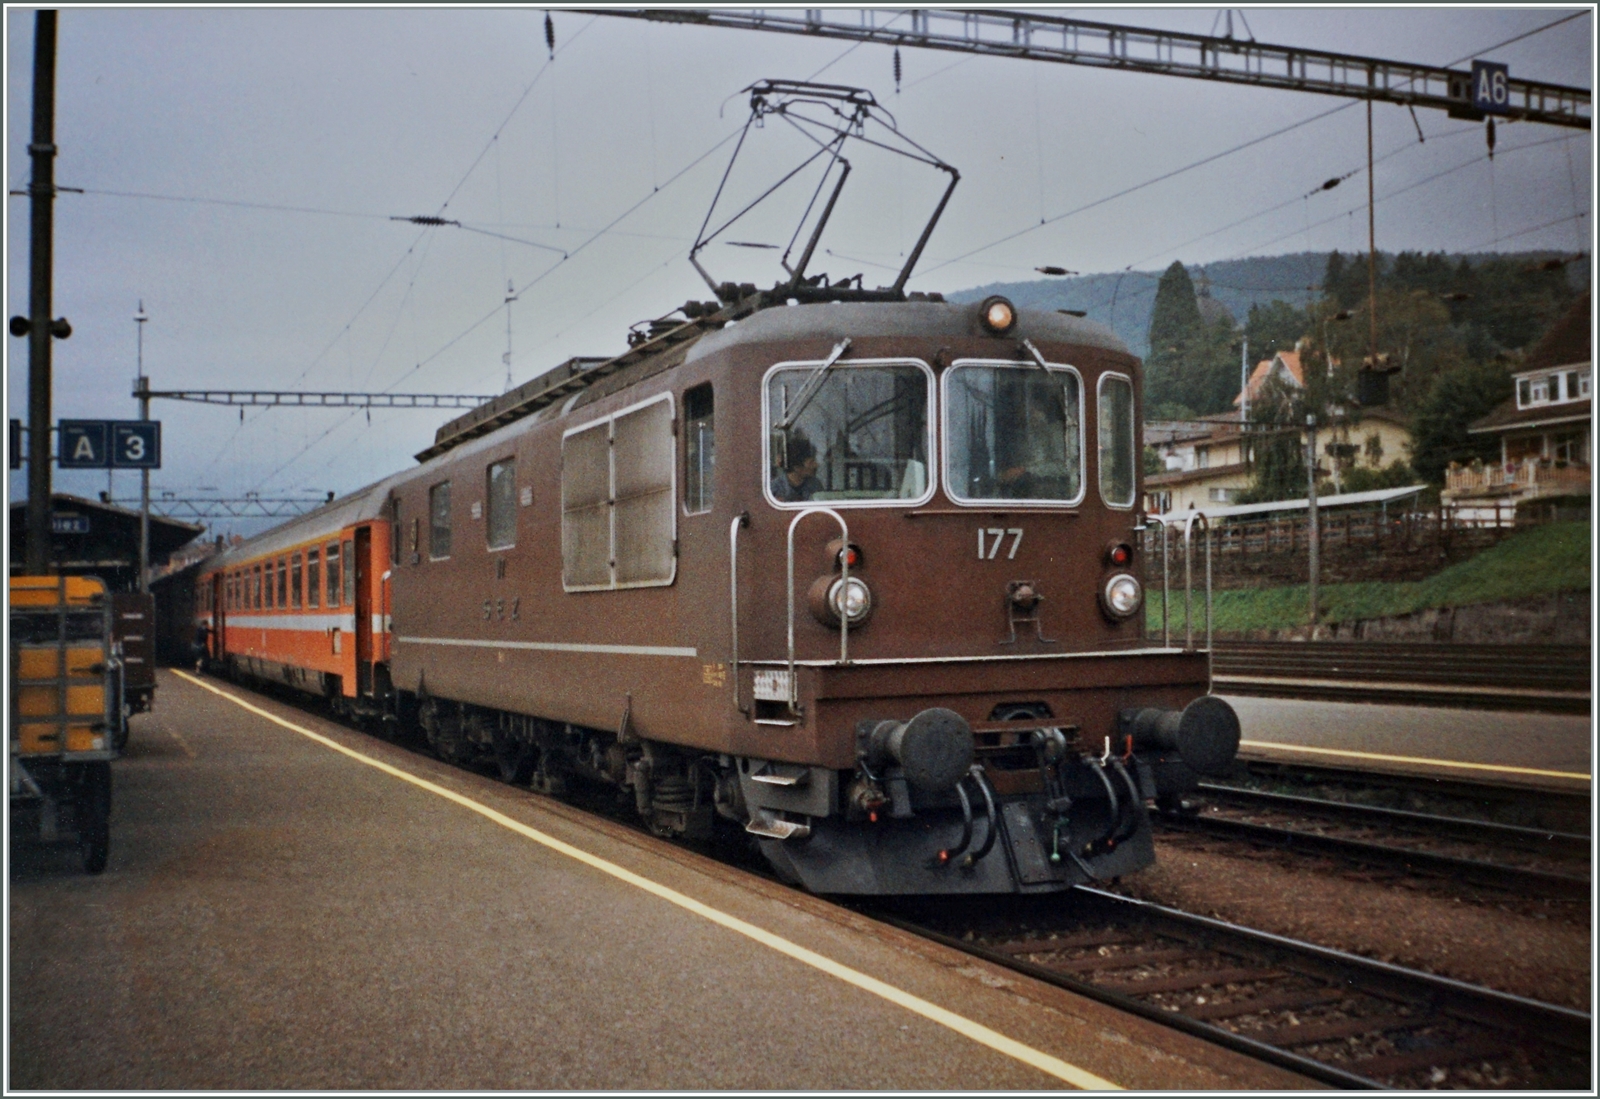 BLS Re 4/4 177 - 180 ab 1972 (an SEZ/GBS/BN ausgeliefert); die BLS Re 4/4 177  Zweisimmen  (ex SEZ Re 4/4) wartet mit dem EC  Vauban  von Milano nach Bruxelles in Spiez auf die weiterfahrt. 

Analog Bild vom Sept. 1992